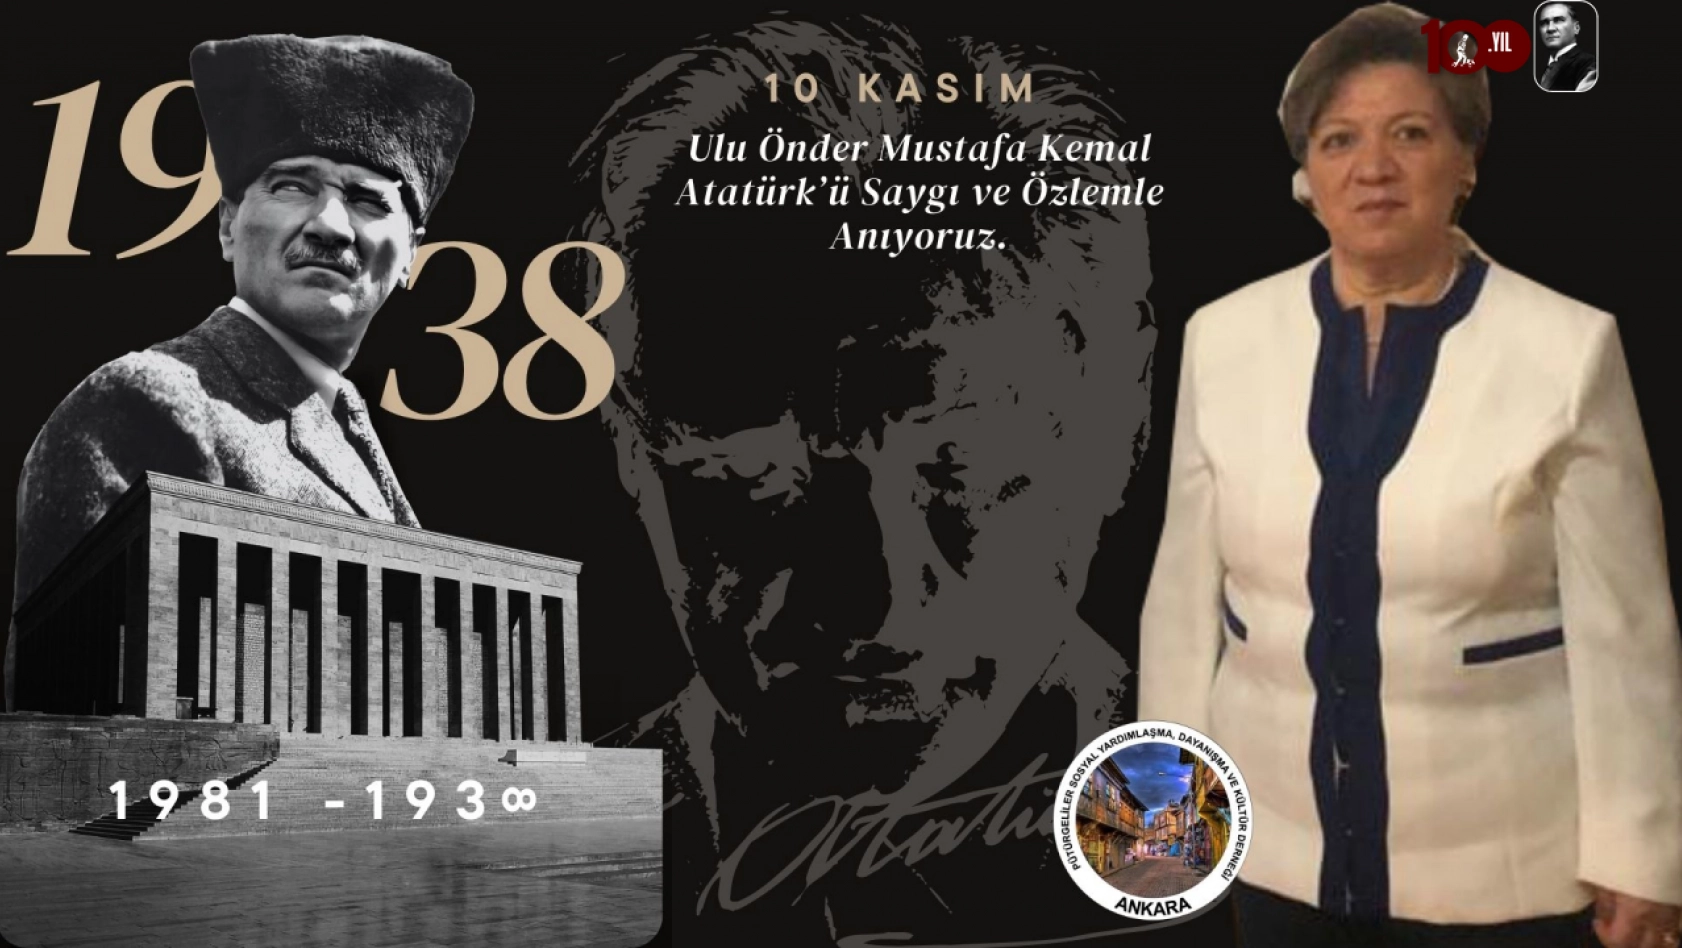 Başkan Koçak'tan 10 kasım Atatürk'ün anma mesajı